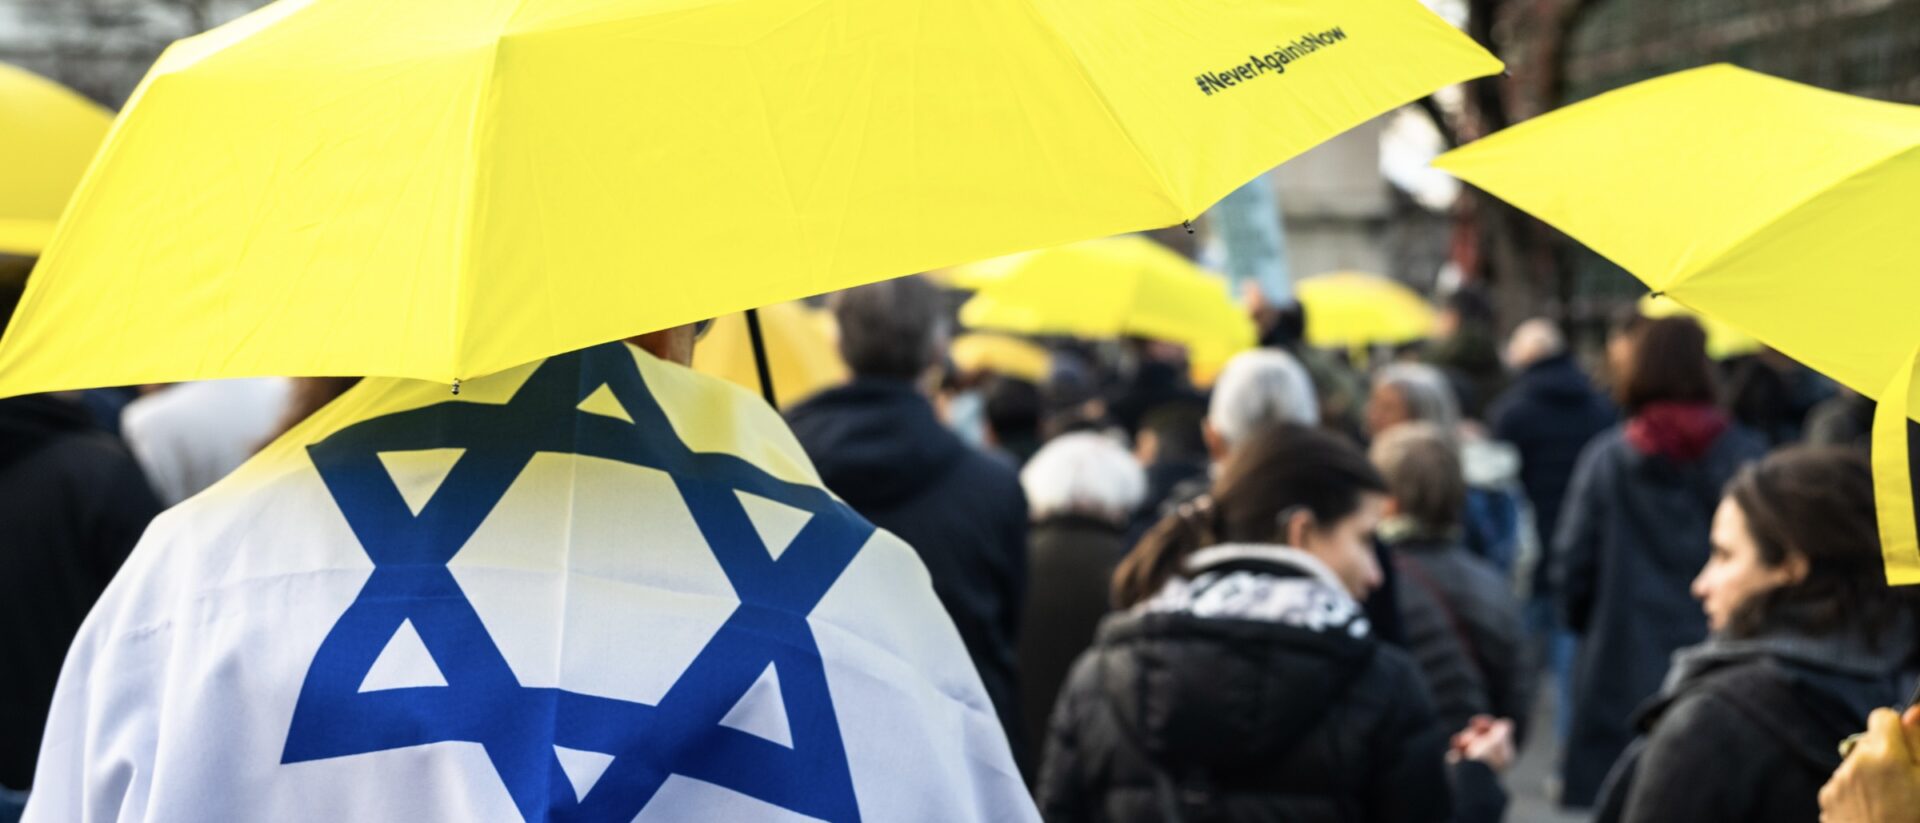 Mahnwache nach dem Terrorakt auf einen orthodoxen Juden Anfang März in Zürich: Bekenntnis zu Israel und gegen Antisemitismus.